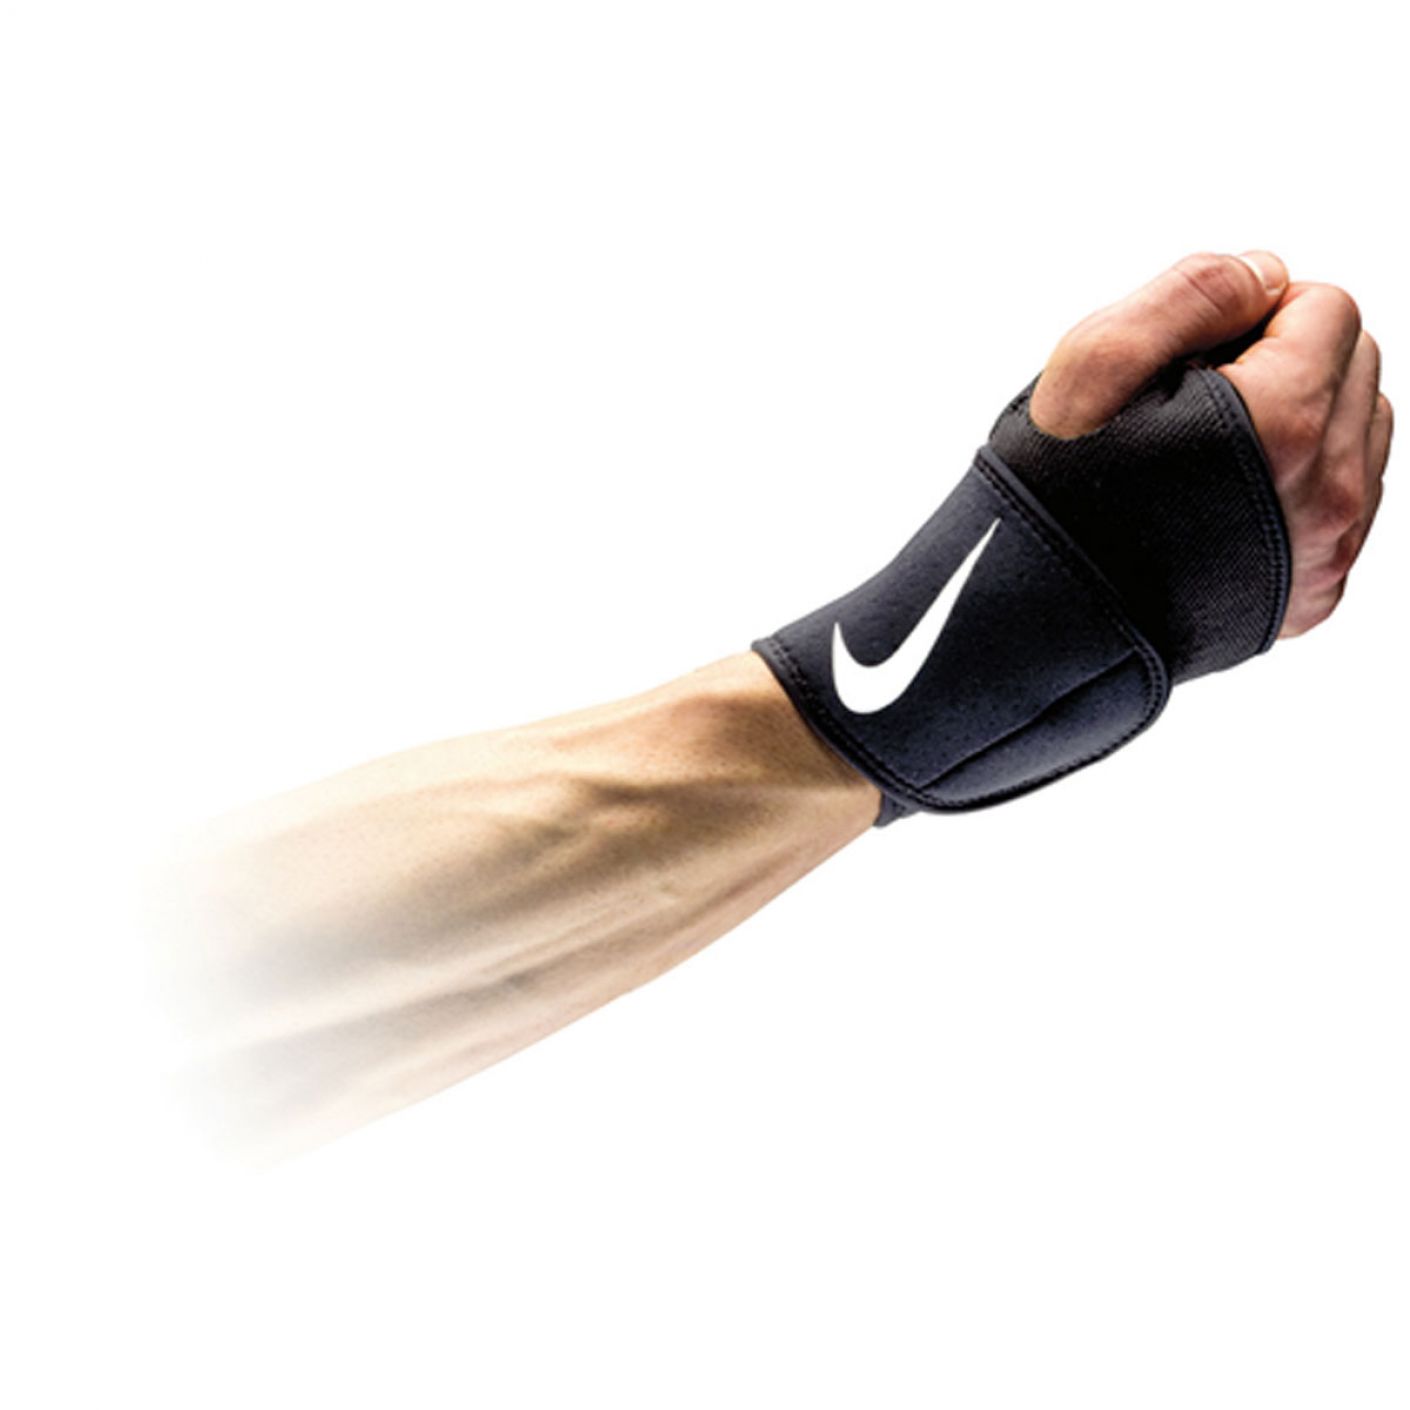 Nike Wrist and Thumb Wrap - Polsino Nero